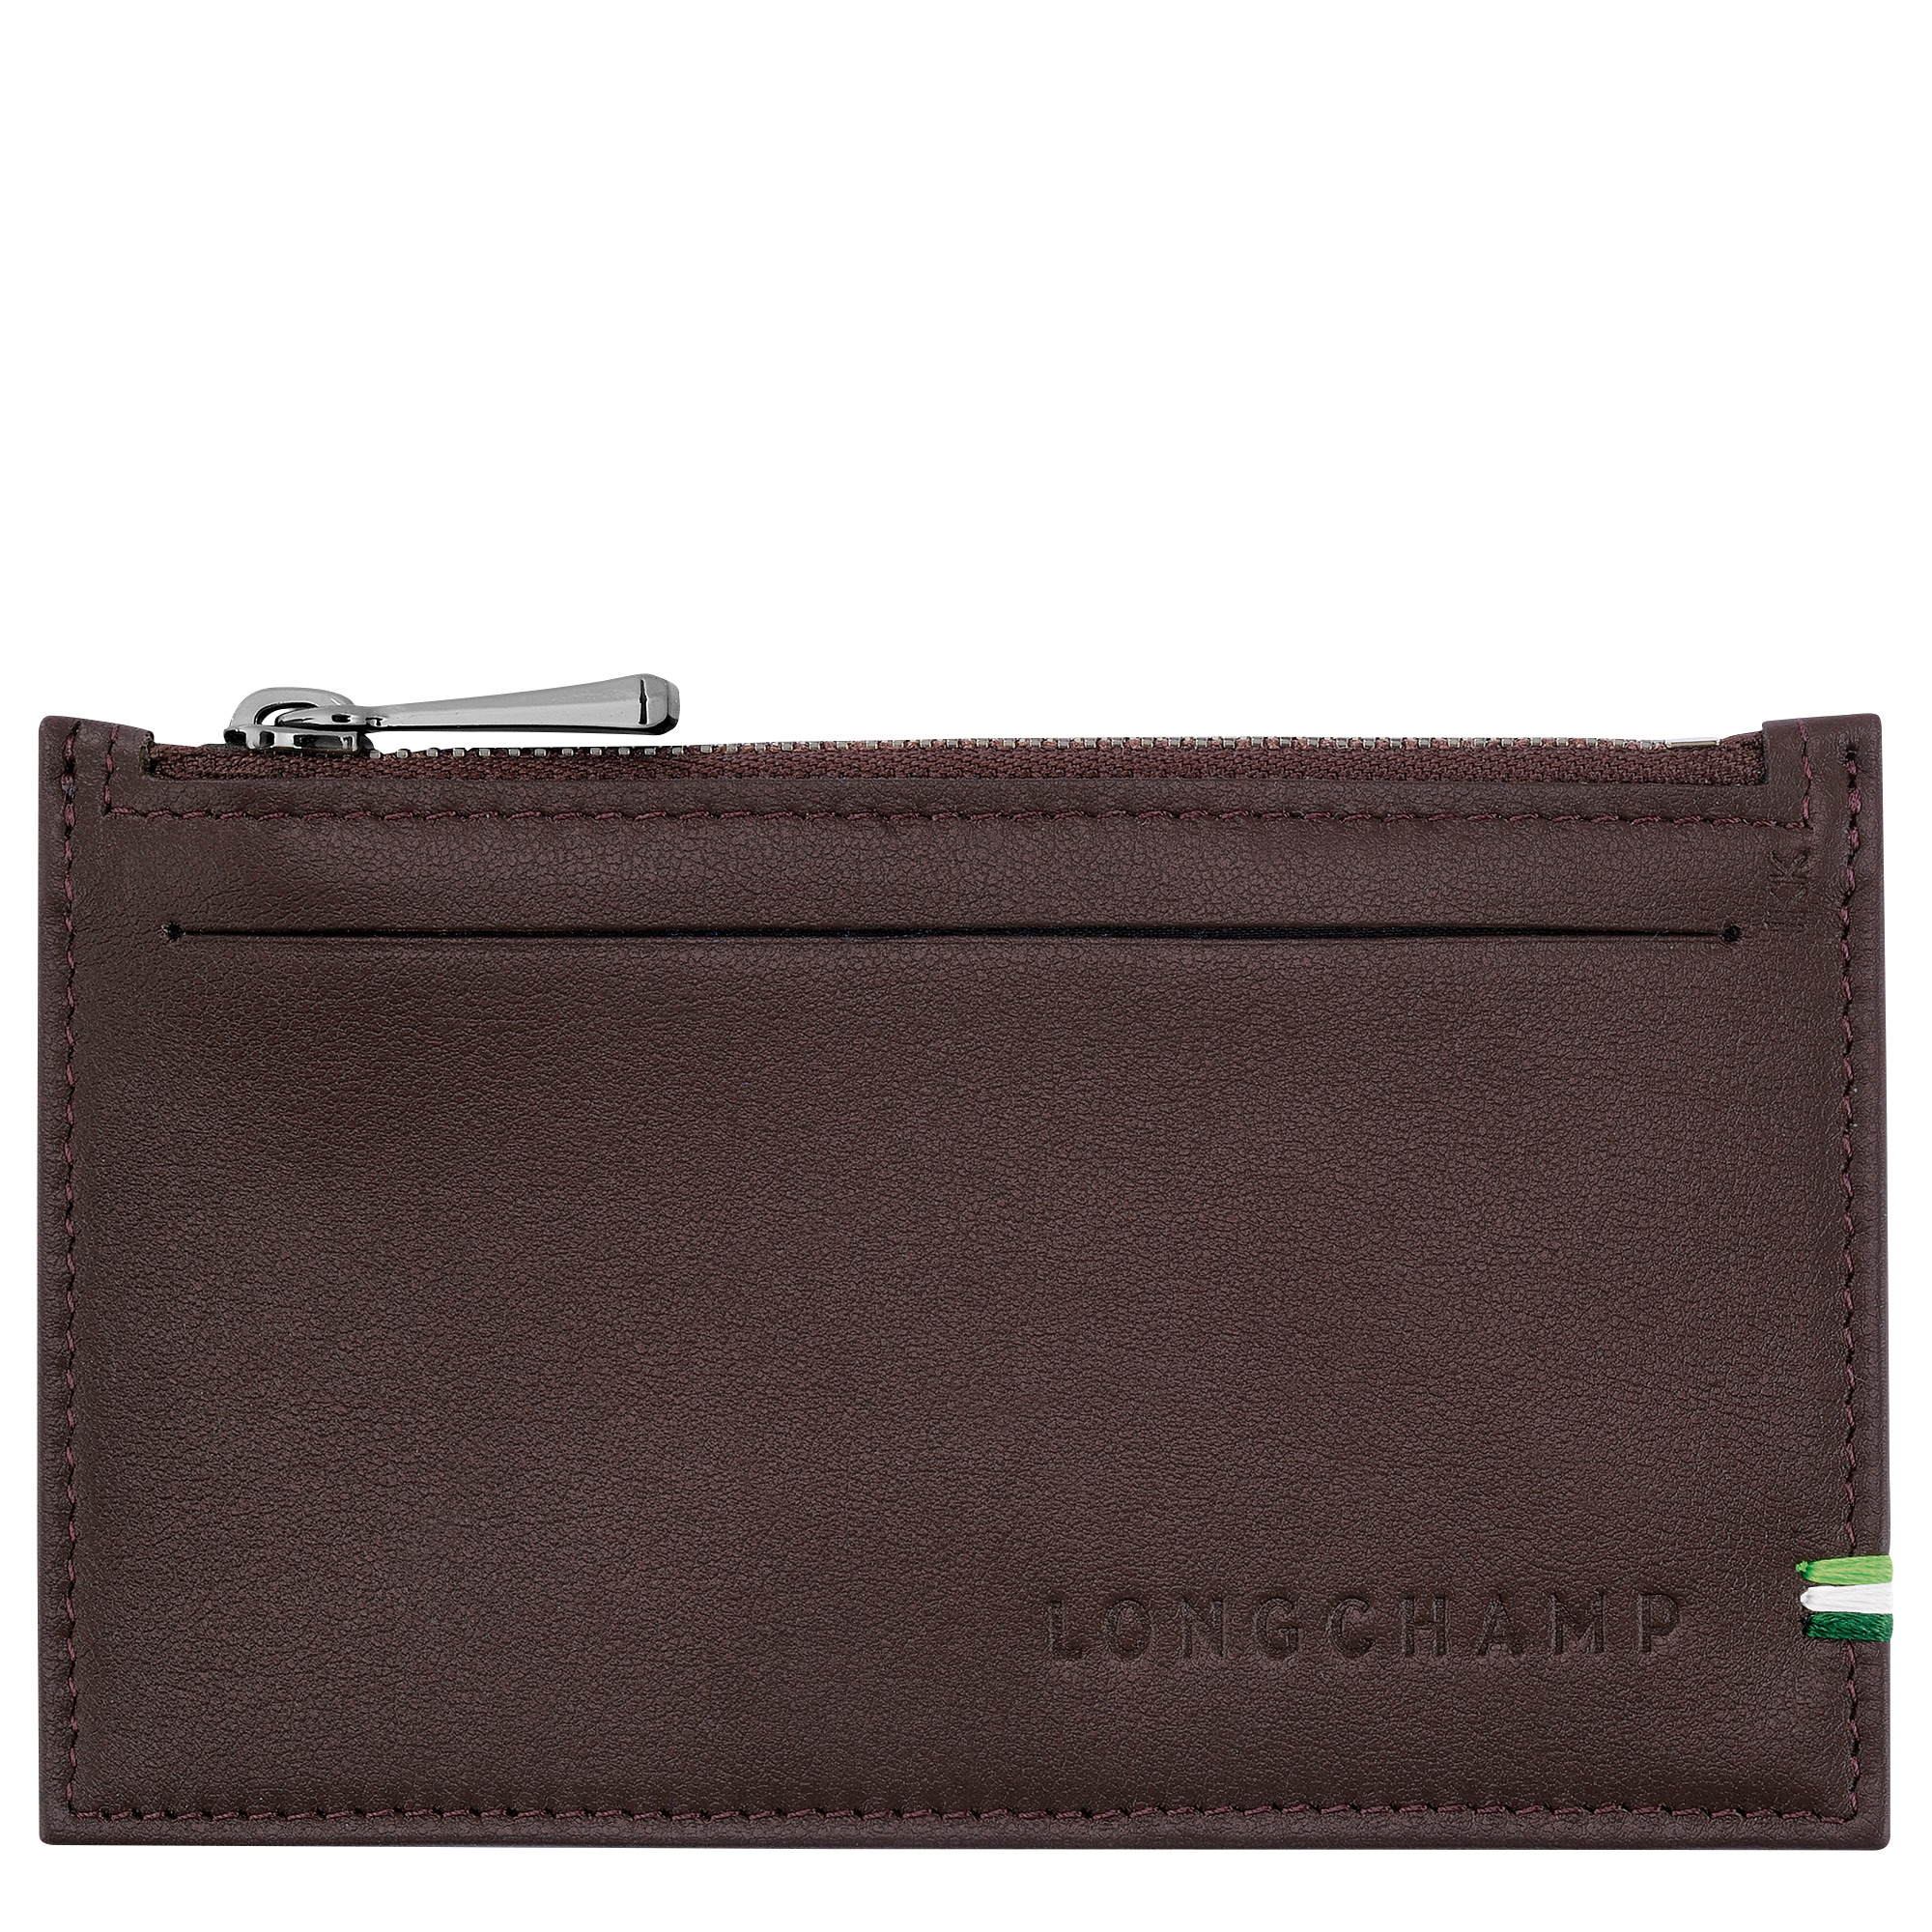 Longchamp sur Seine Coin purse Mocha - Leather - 1